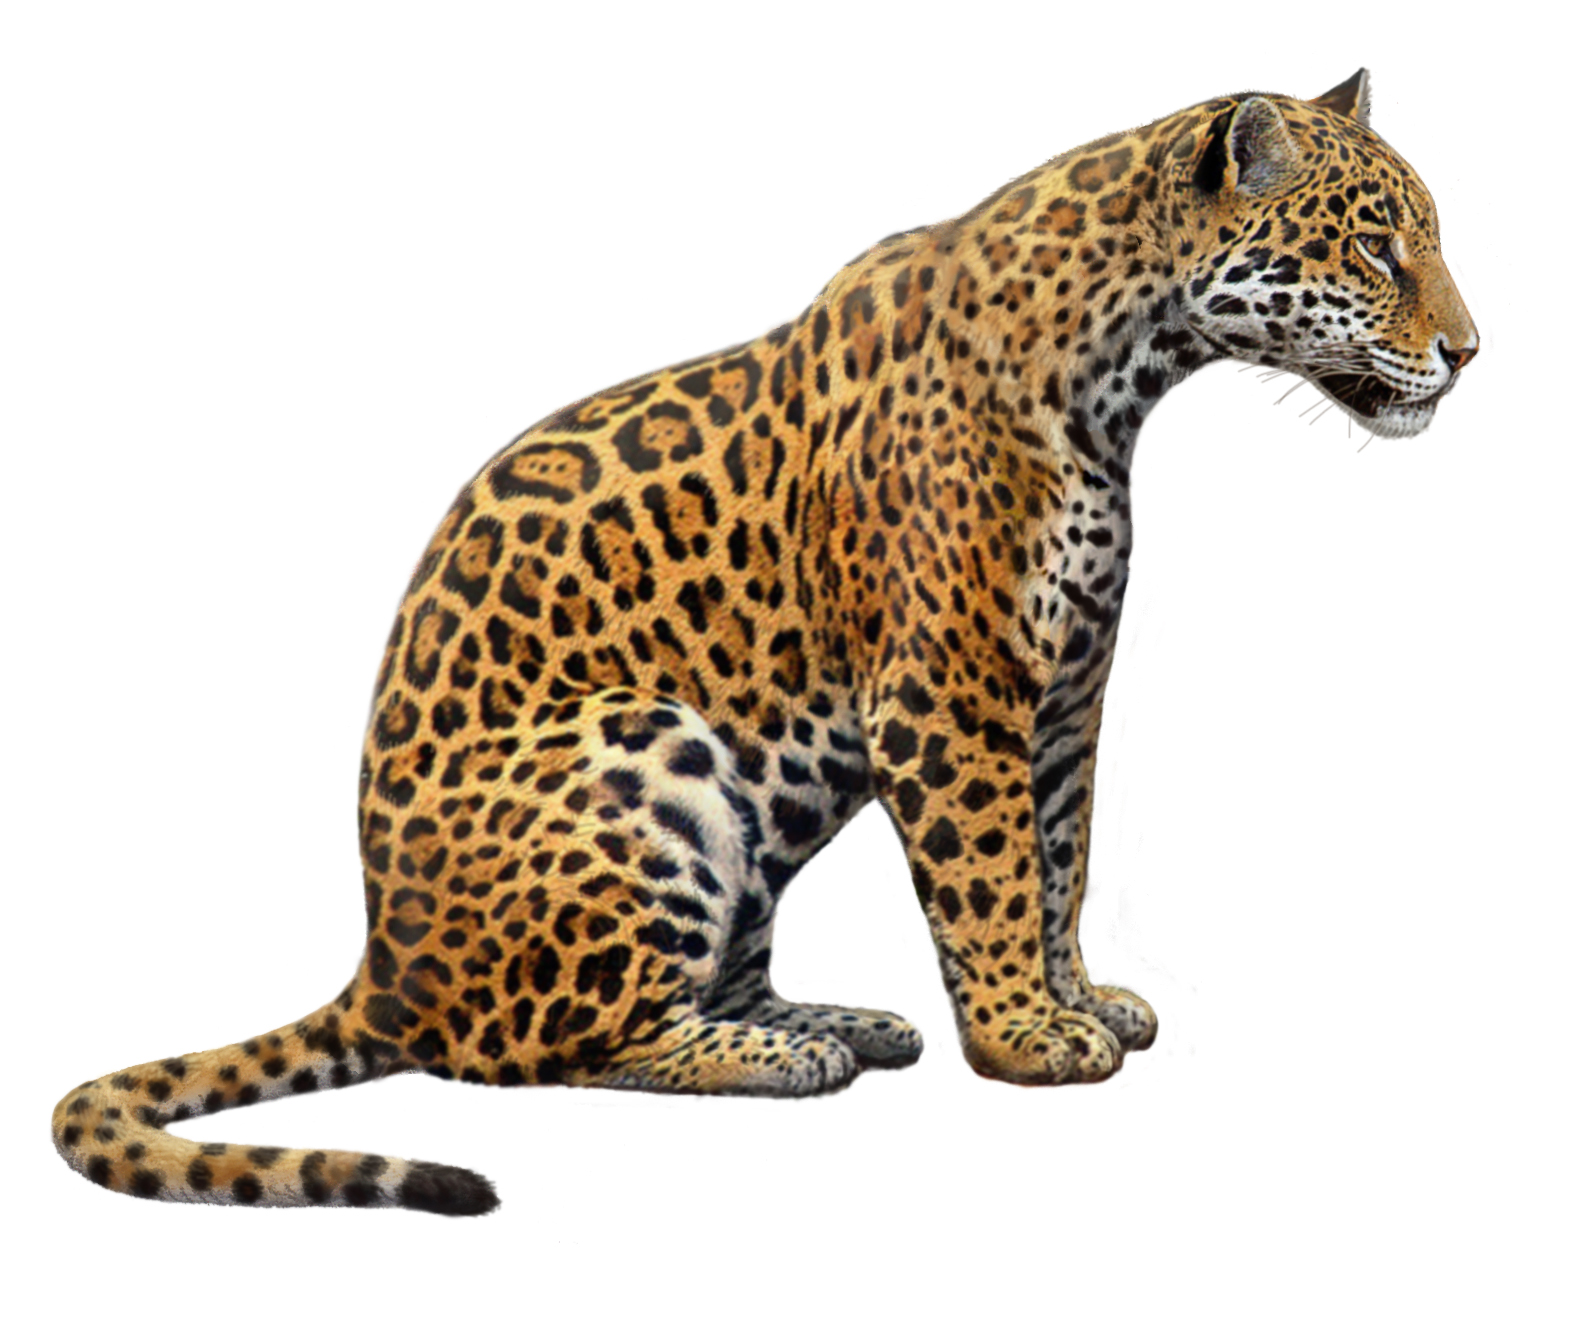 Jaguar Animal Drawing at GetDrawings.com.